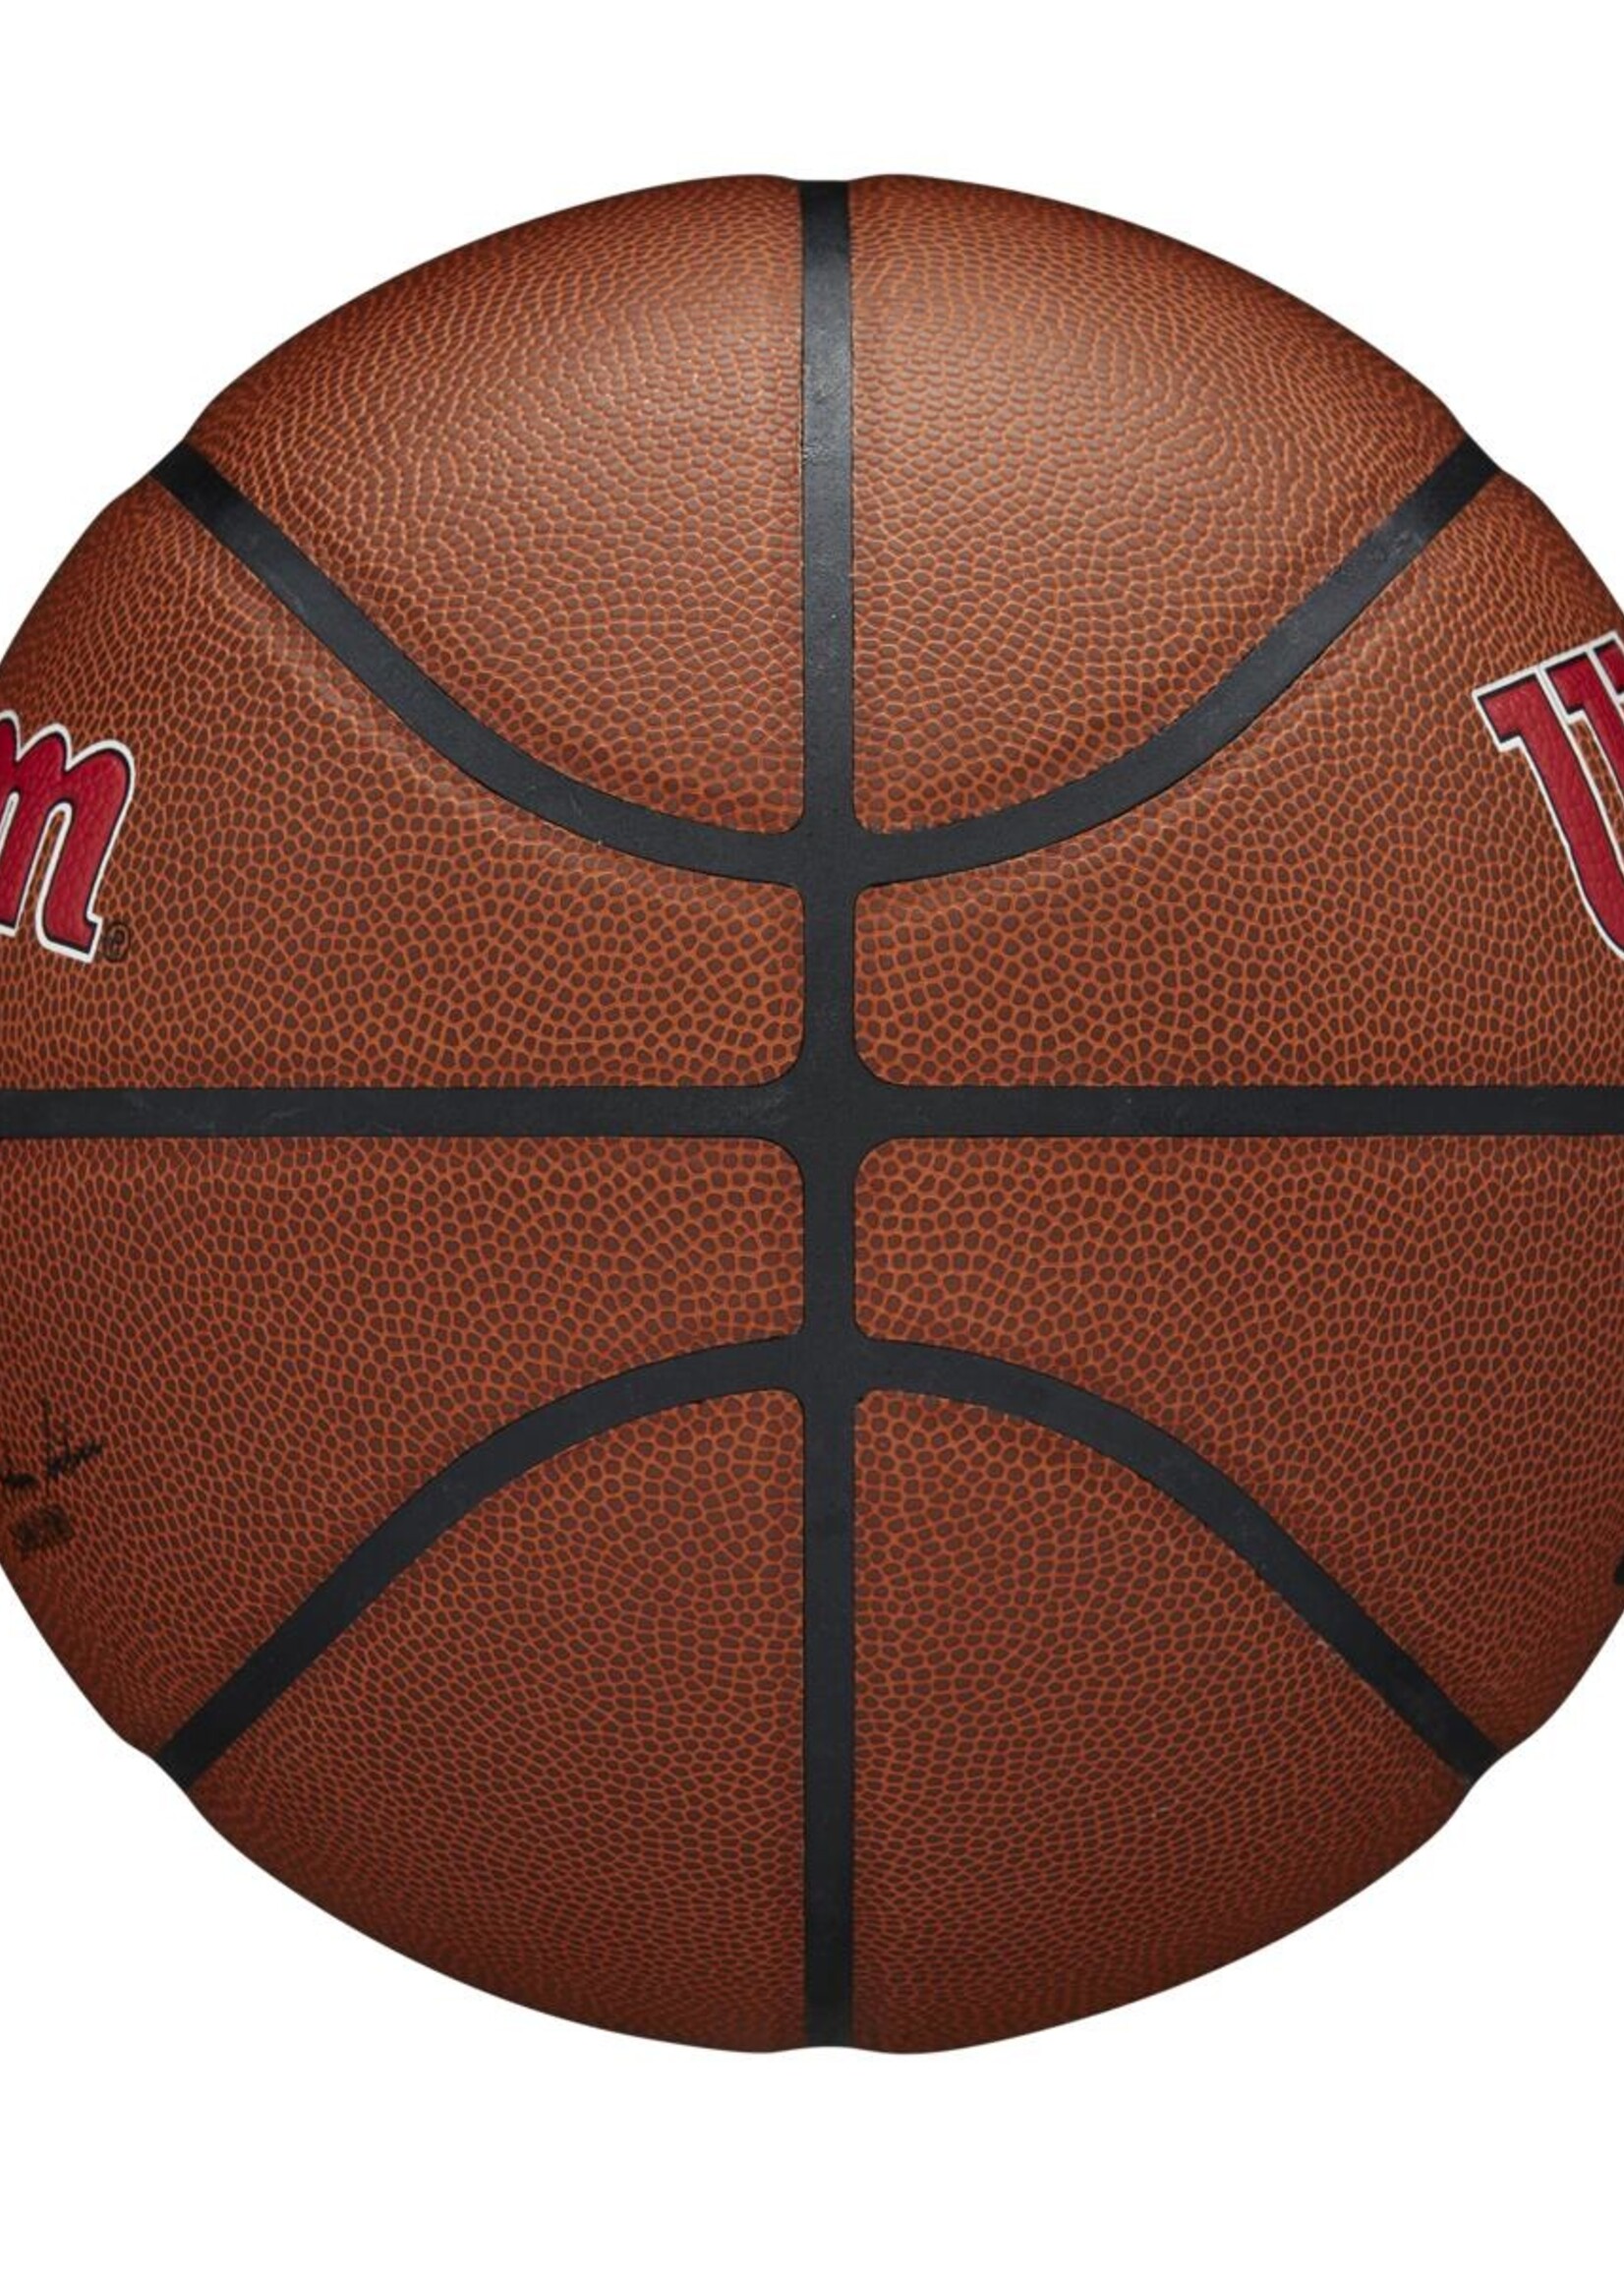 Wilson Wilson NBA CHICAGO BULLS Composite Indoor / Outdoor Basketbal (7)